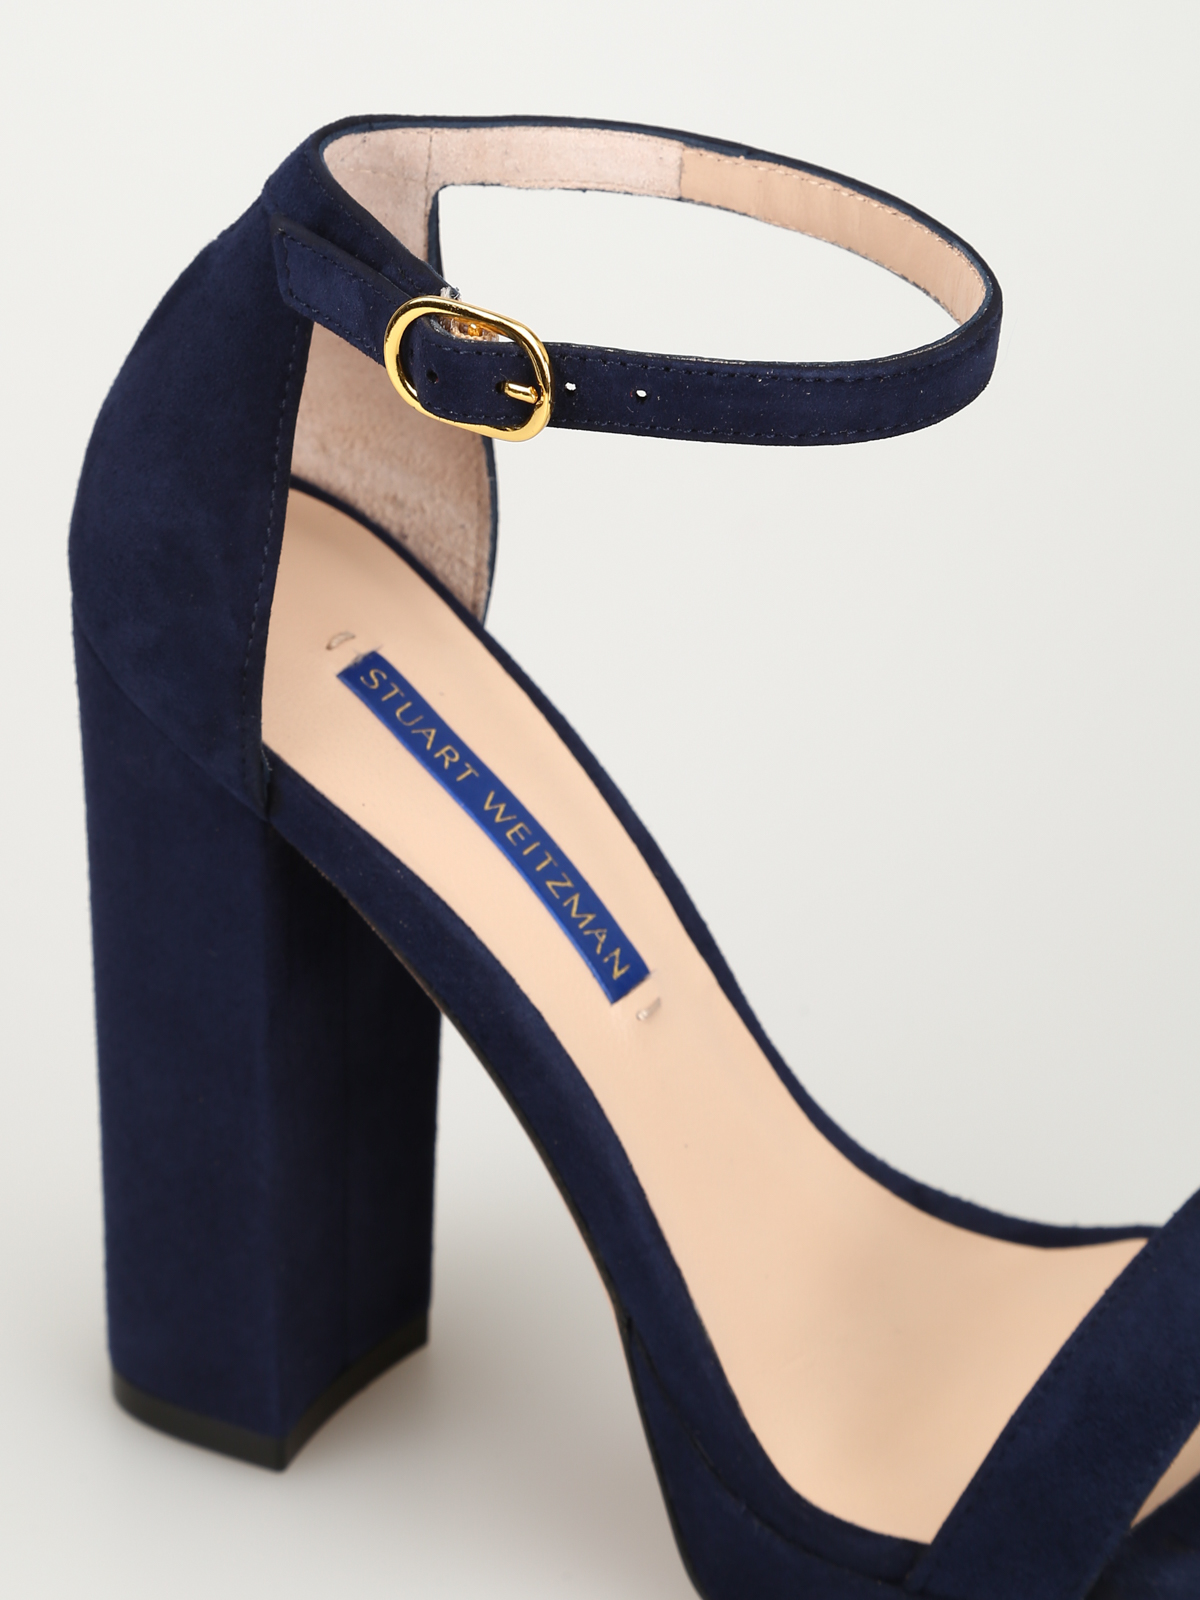 stuart weitzman blue heels